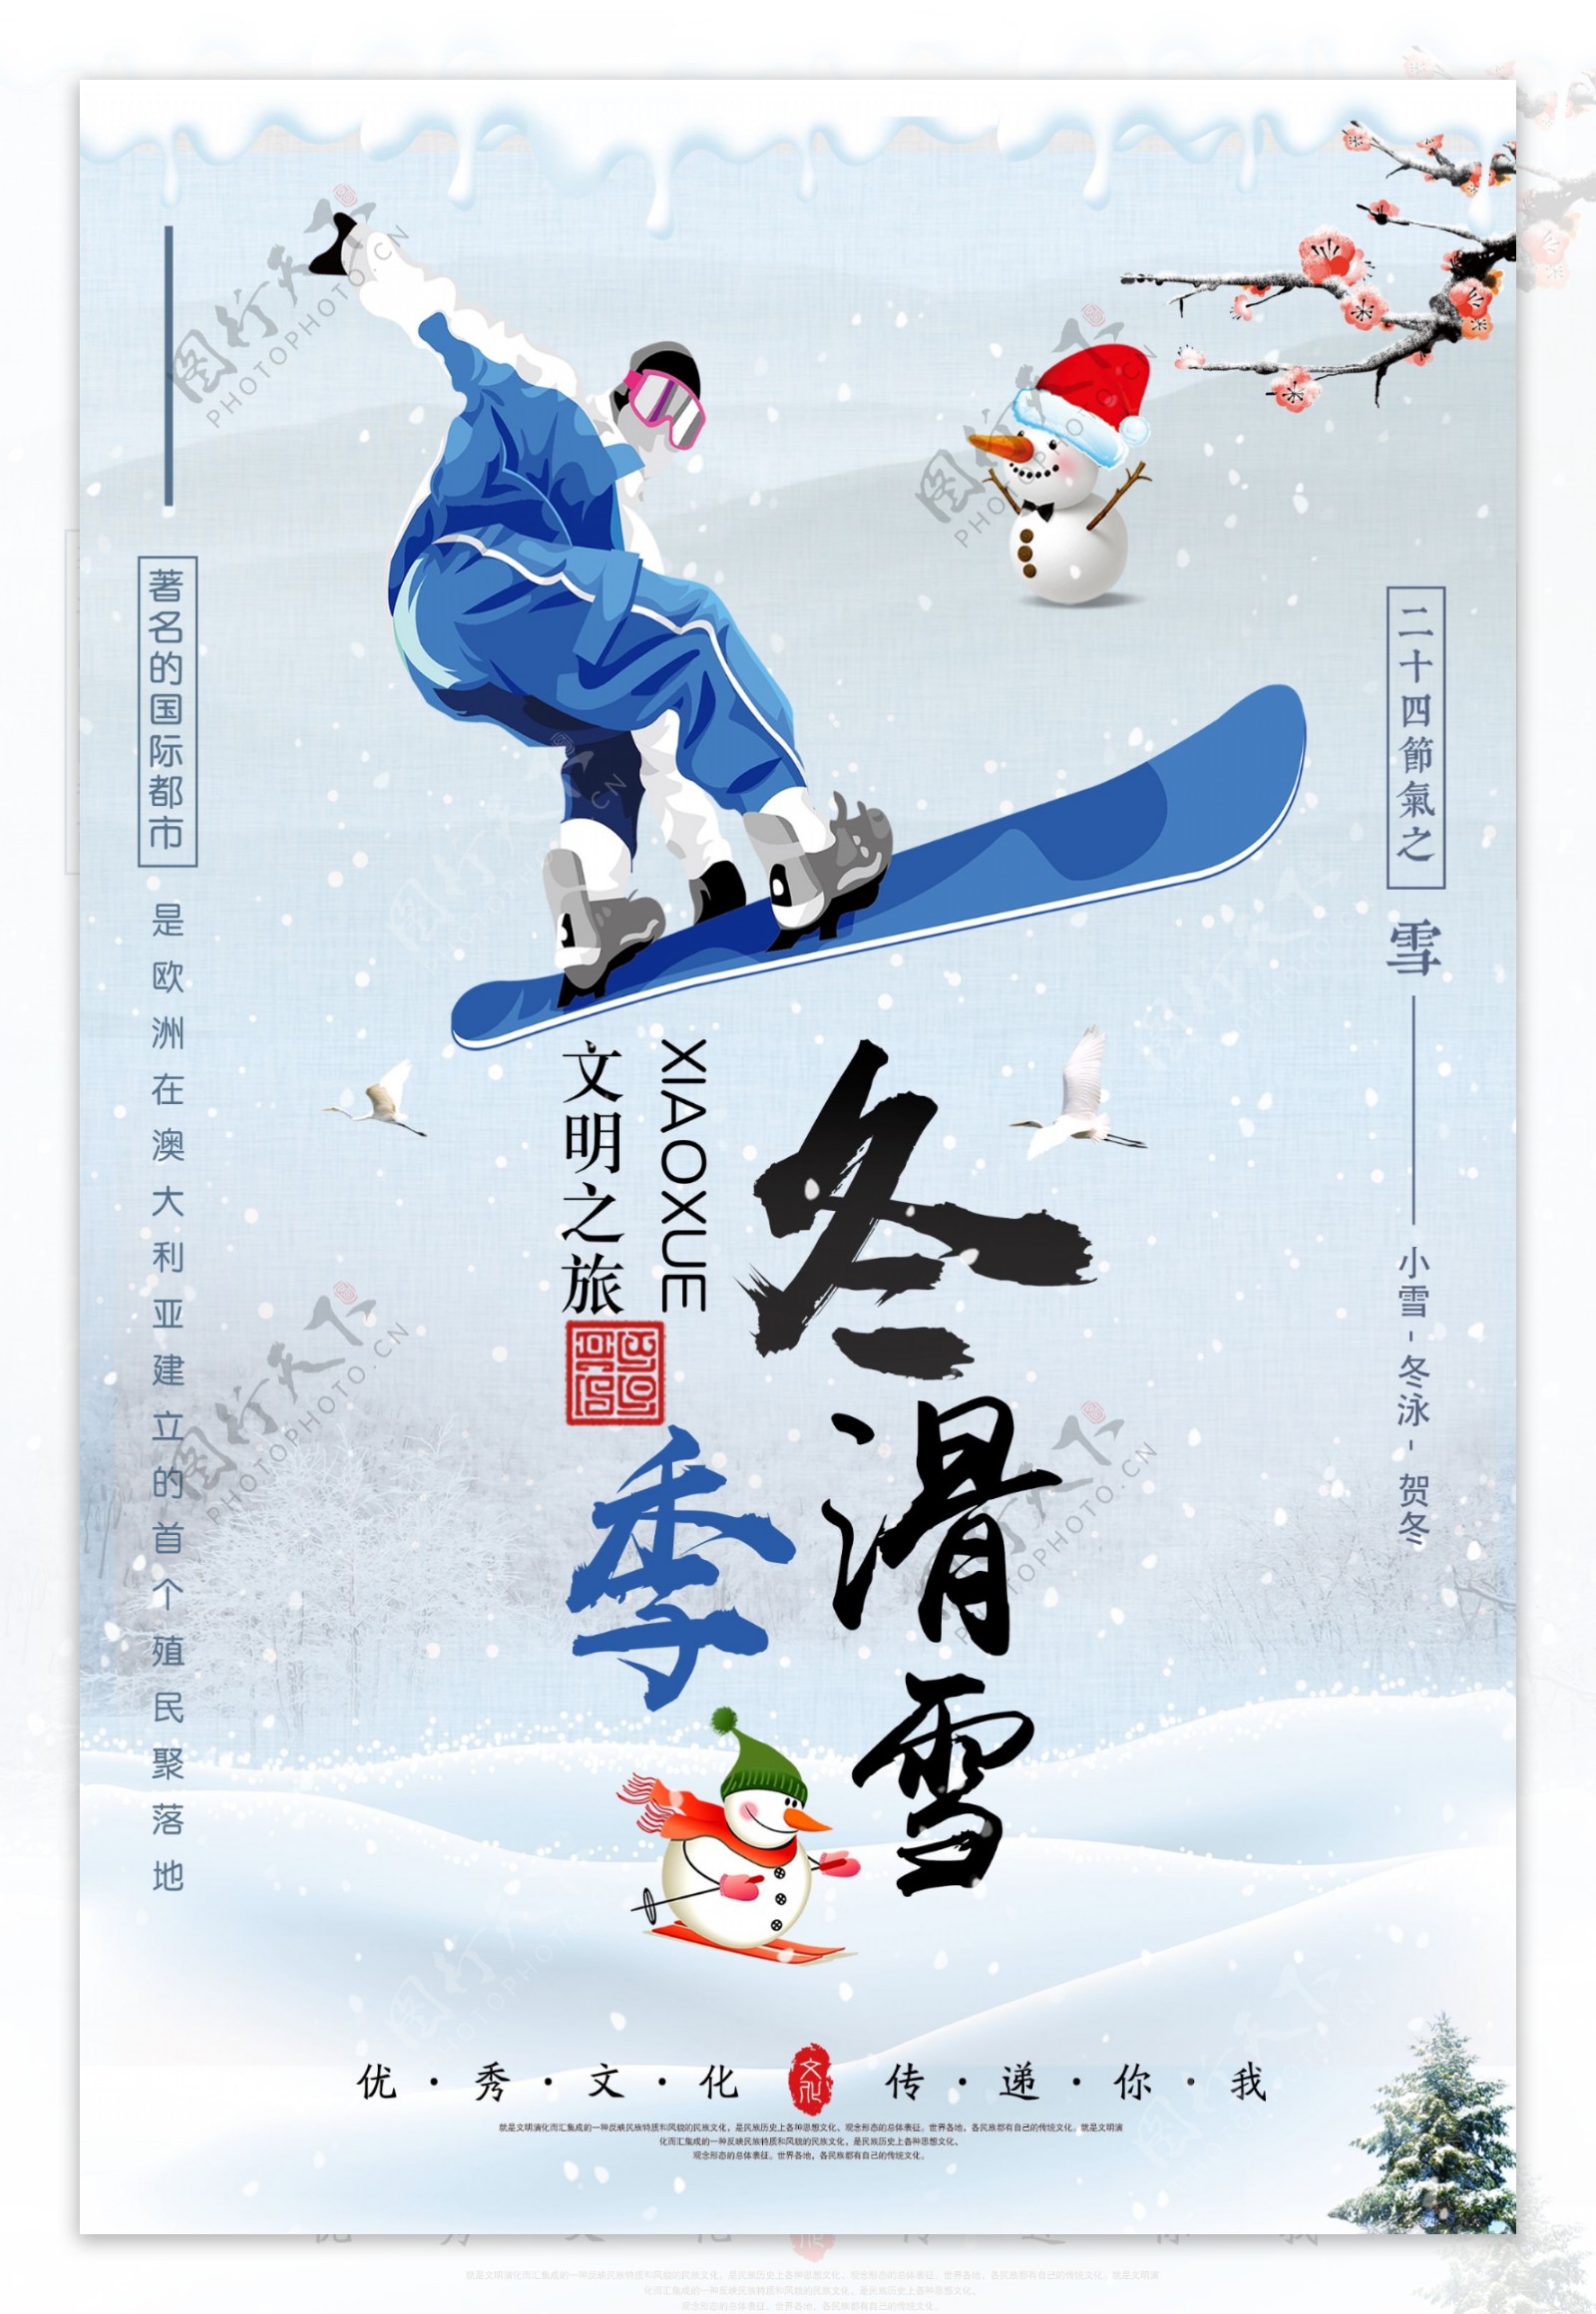 简约滑雪体育海报